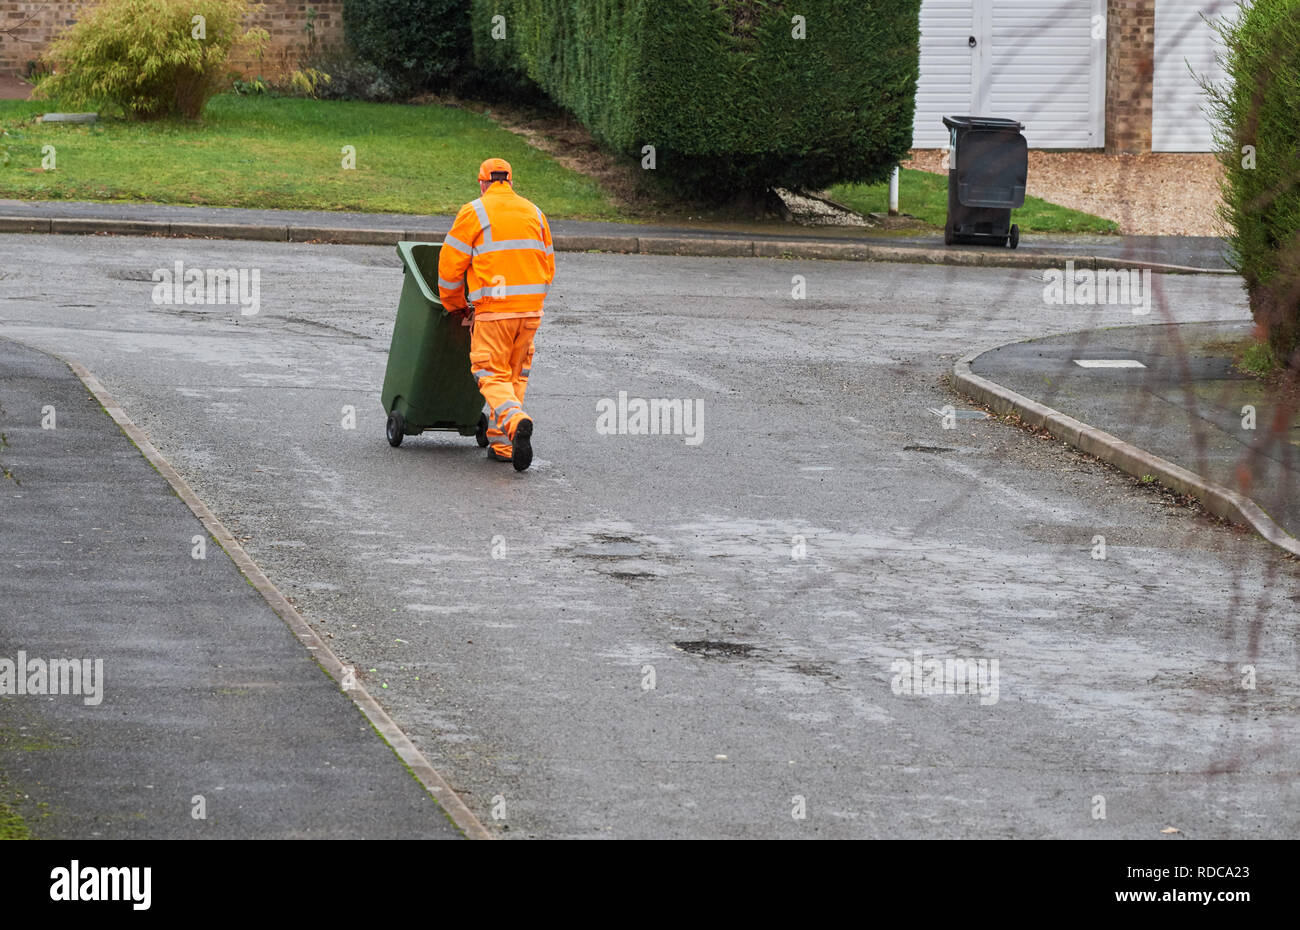 Scomparto di un uomo vestito in un arancio fluorescente giacca e pantaloni spinge un verde riciclo bidone con ruote con rifiuti riciclabili giù per una strada su un inverno umido Foto Stock